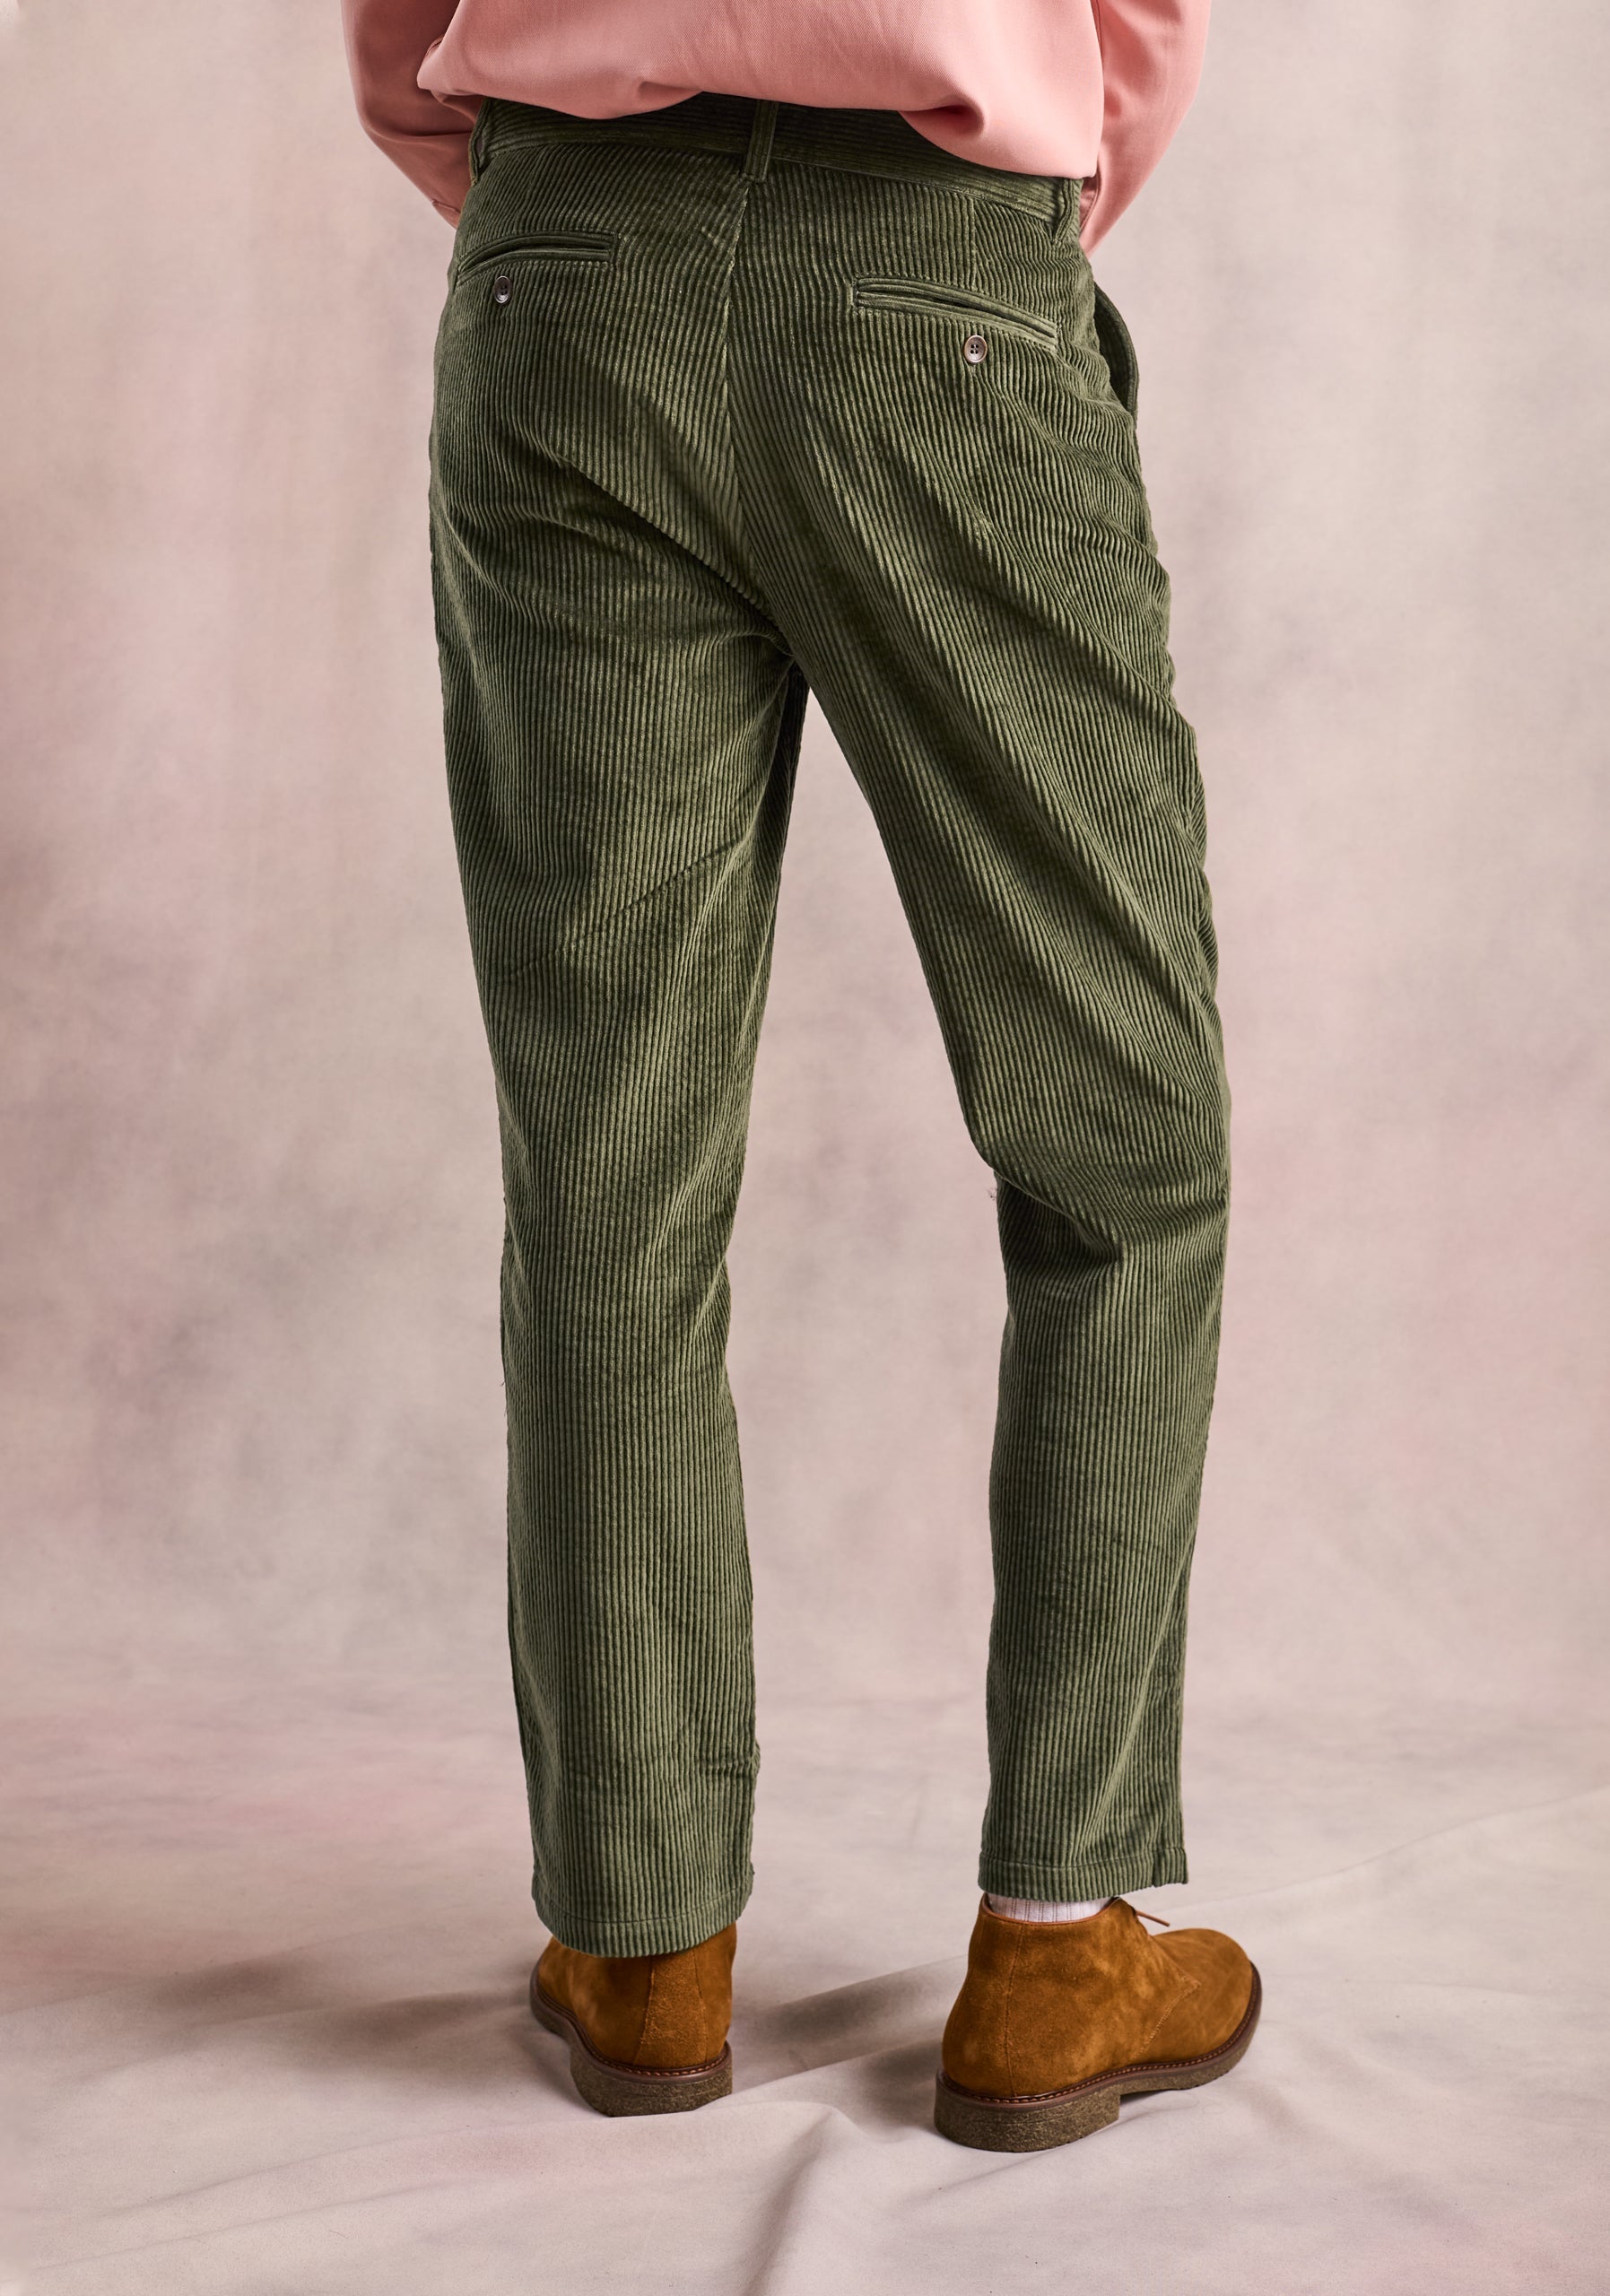 Pantalon Pana Hudson Verde Medio